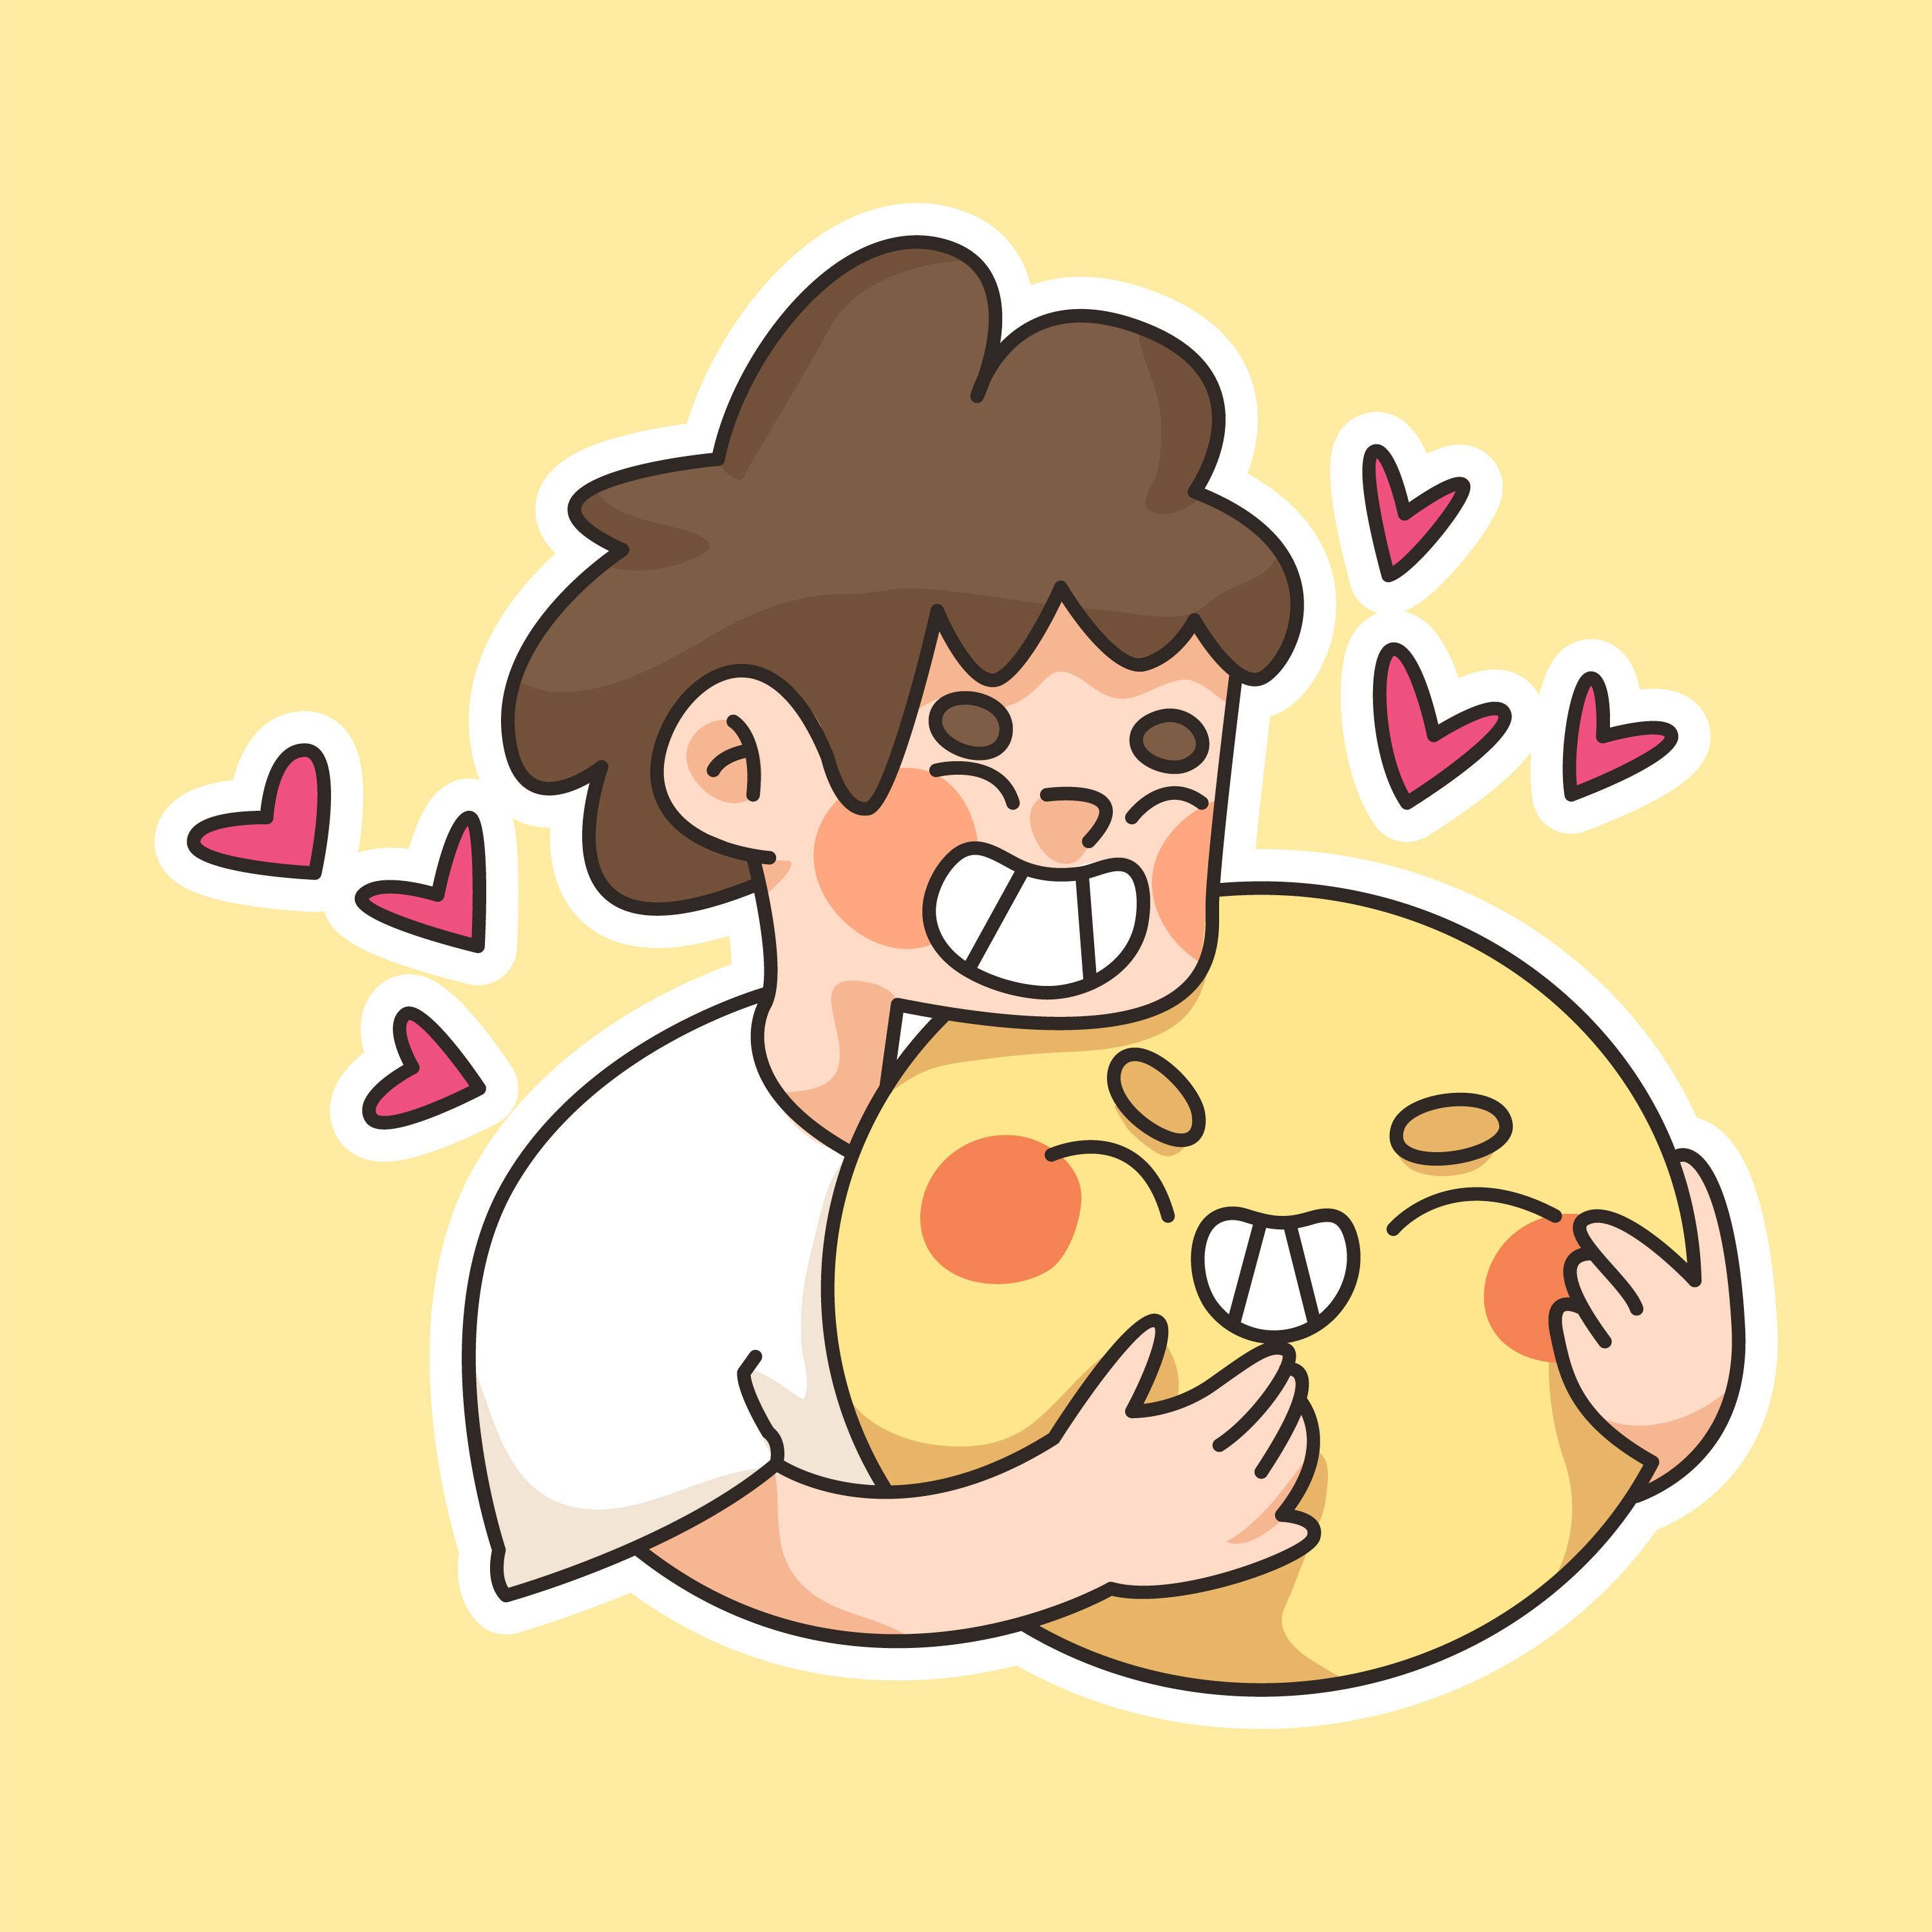 Hug dick emoji